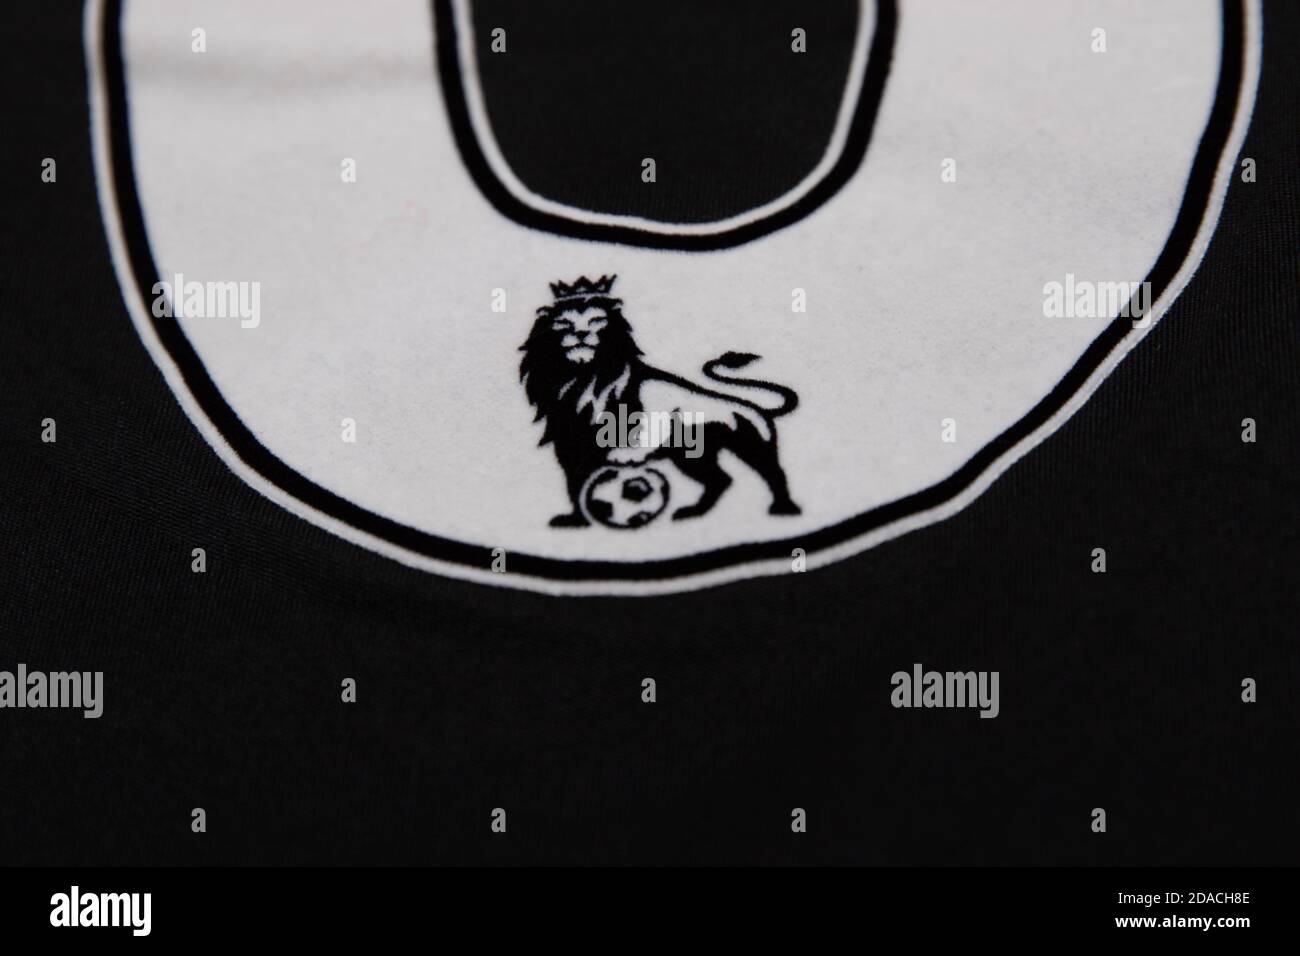 Leone Premier League con logo calcistico inset all'interno della a numero del retro della camicia Foto Stock